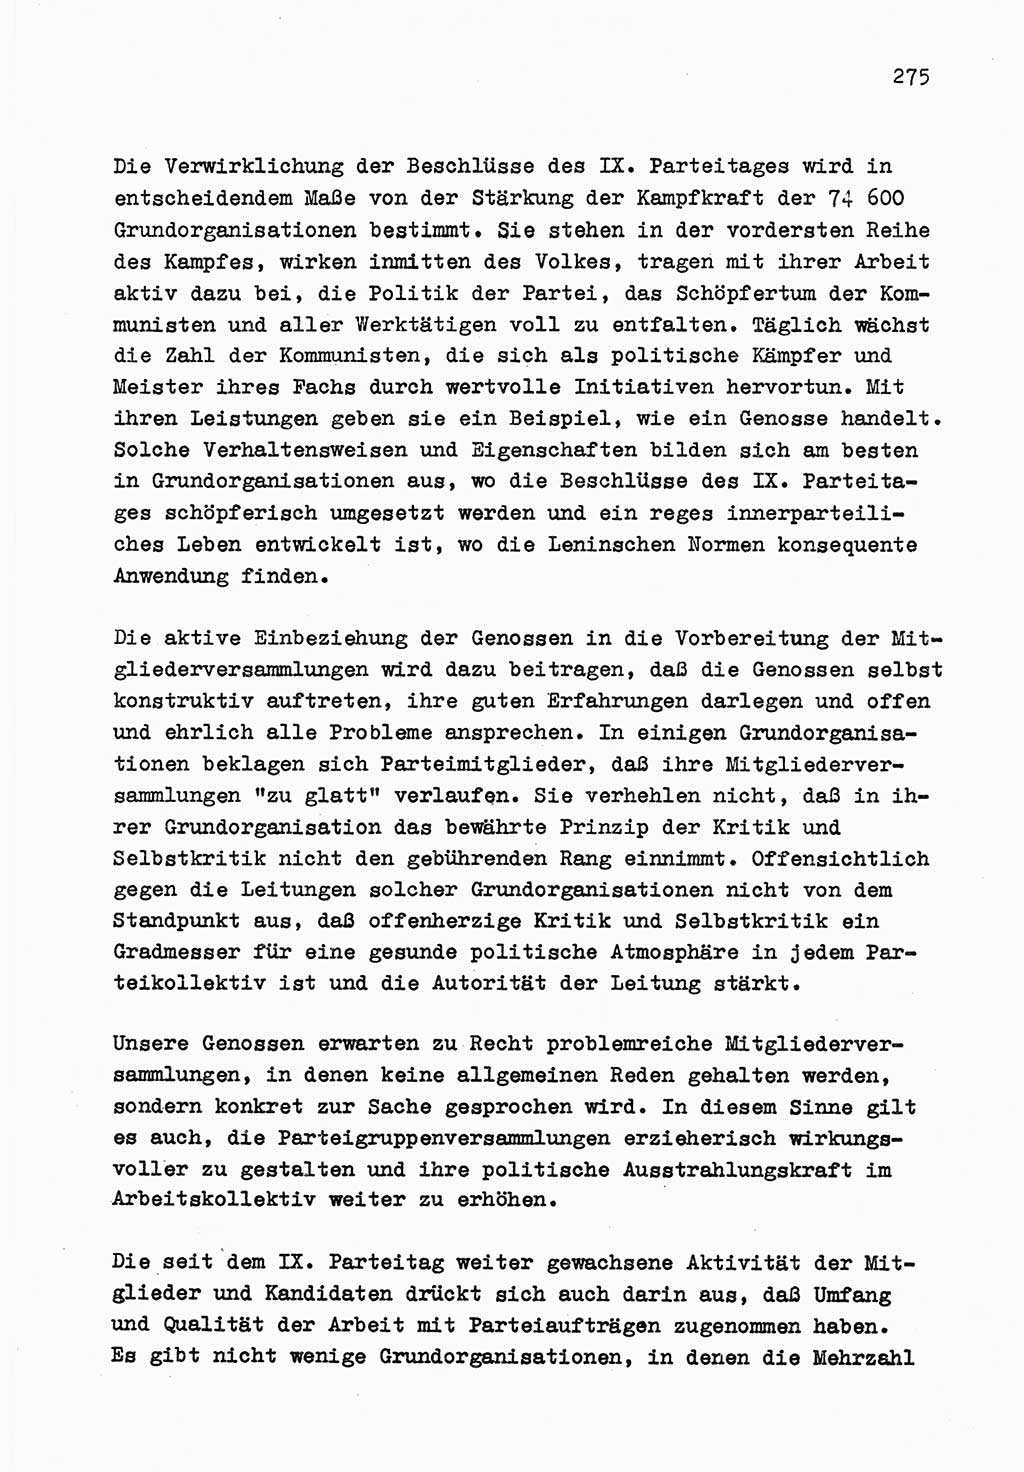 Zu Fragen der Parteiarbeit [Sozialistische Einheitspartei Deutschlands (SED) Deutsche Demokratische Republik (DDR)] 1979, Seite 275 (Fr. PA SED DDR 1979, S. 275)